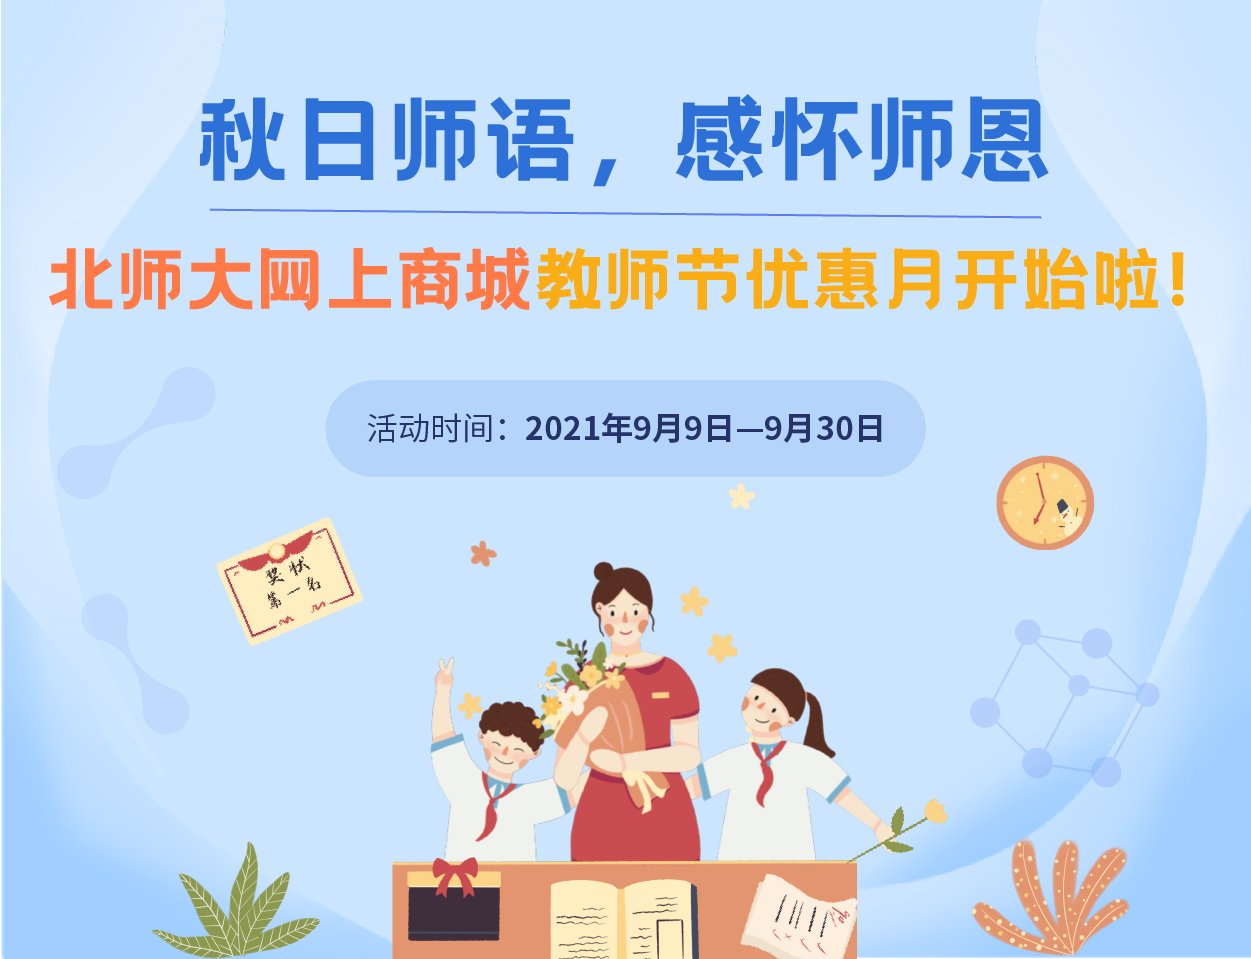 关于北京师范大学网上商城办公采购活动的通知